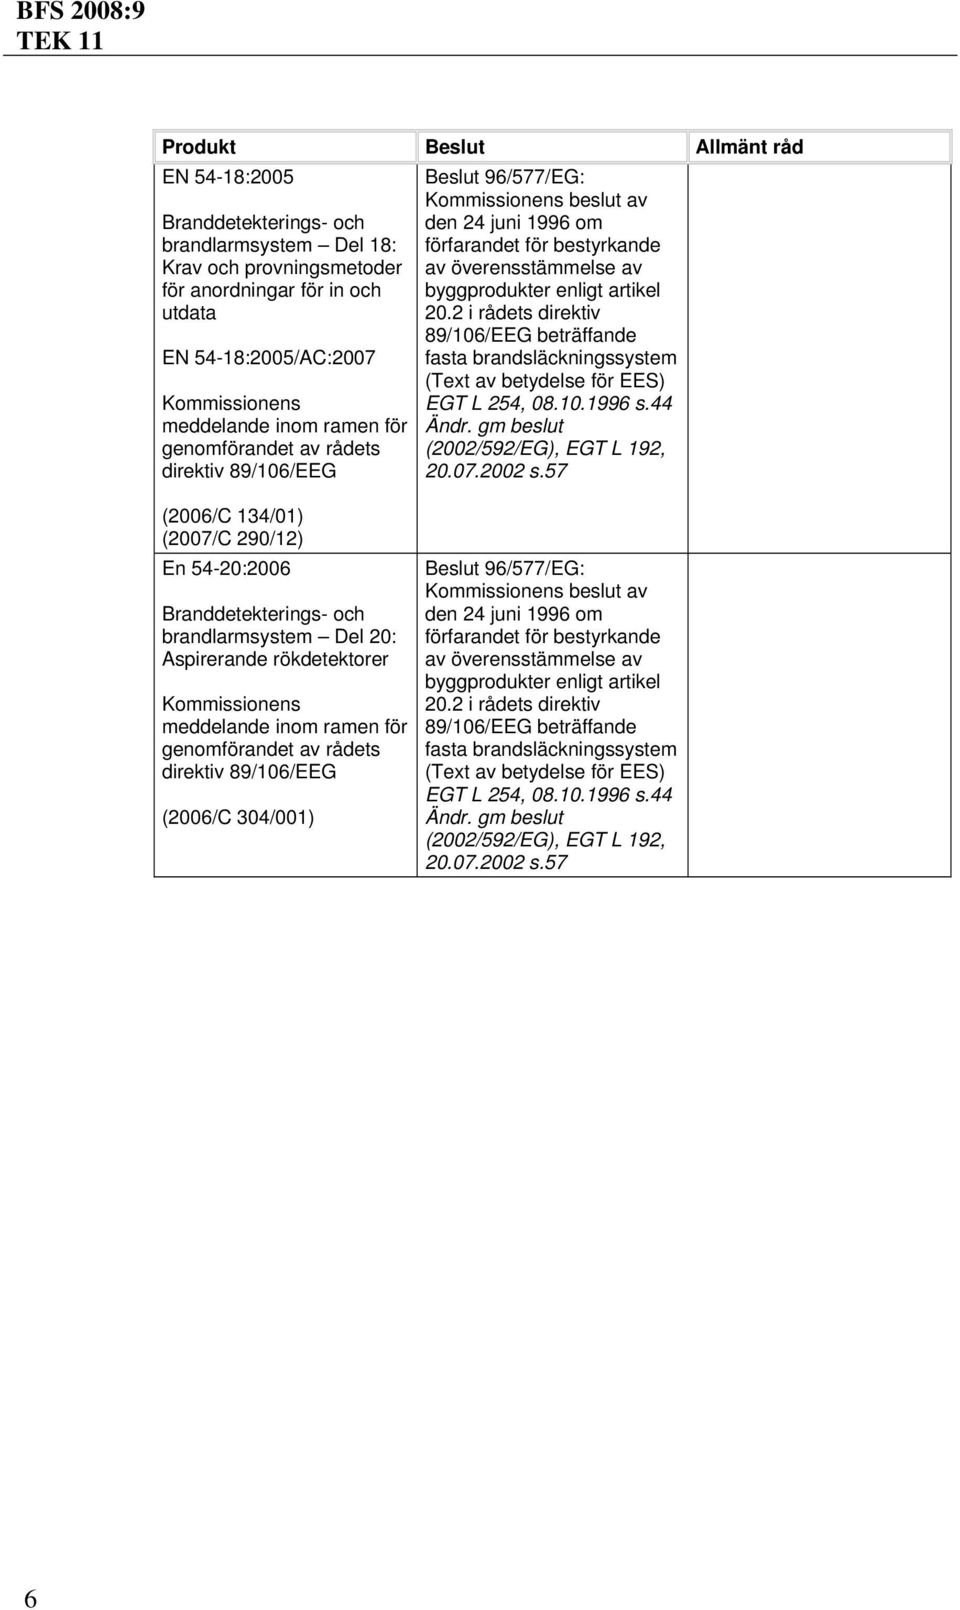 rökdetektorer (2006/C 304/001) Beslut 96/577/EG: fasta brandsläckningssystem (Text av EGT L 254, 08.10.1996 s.